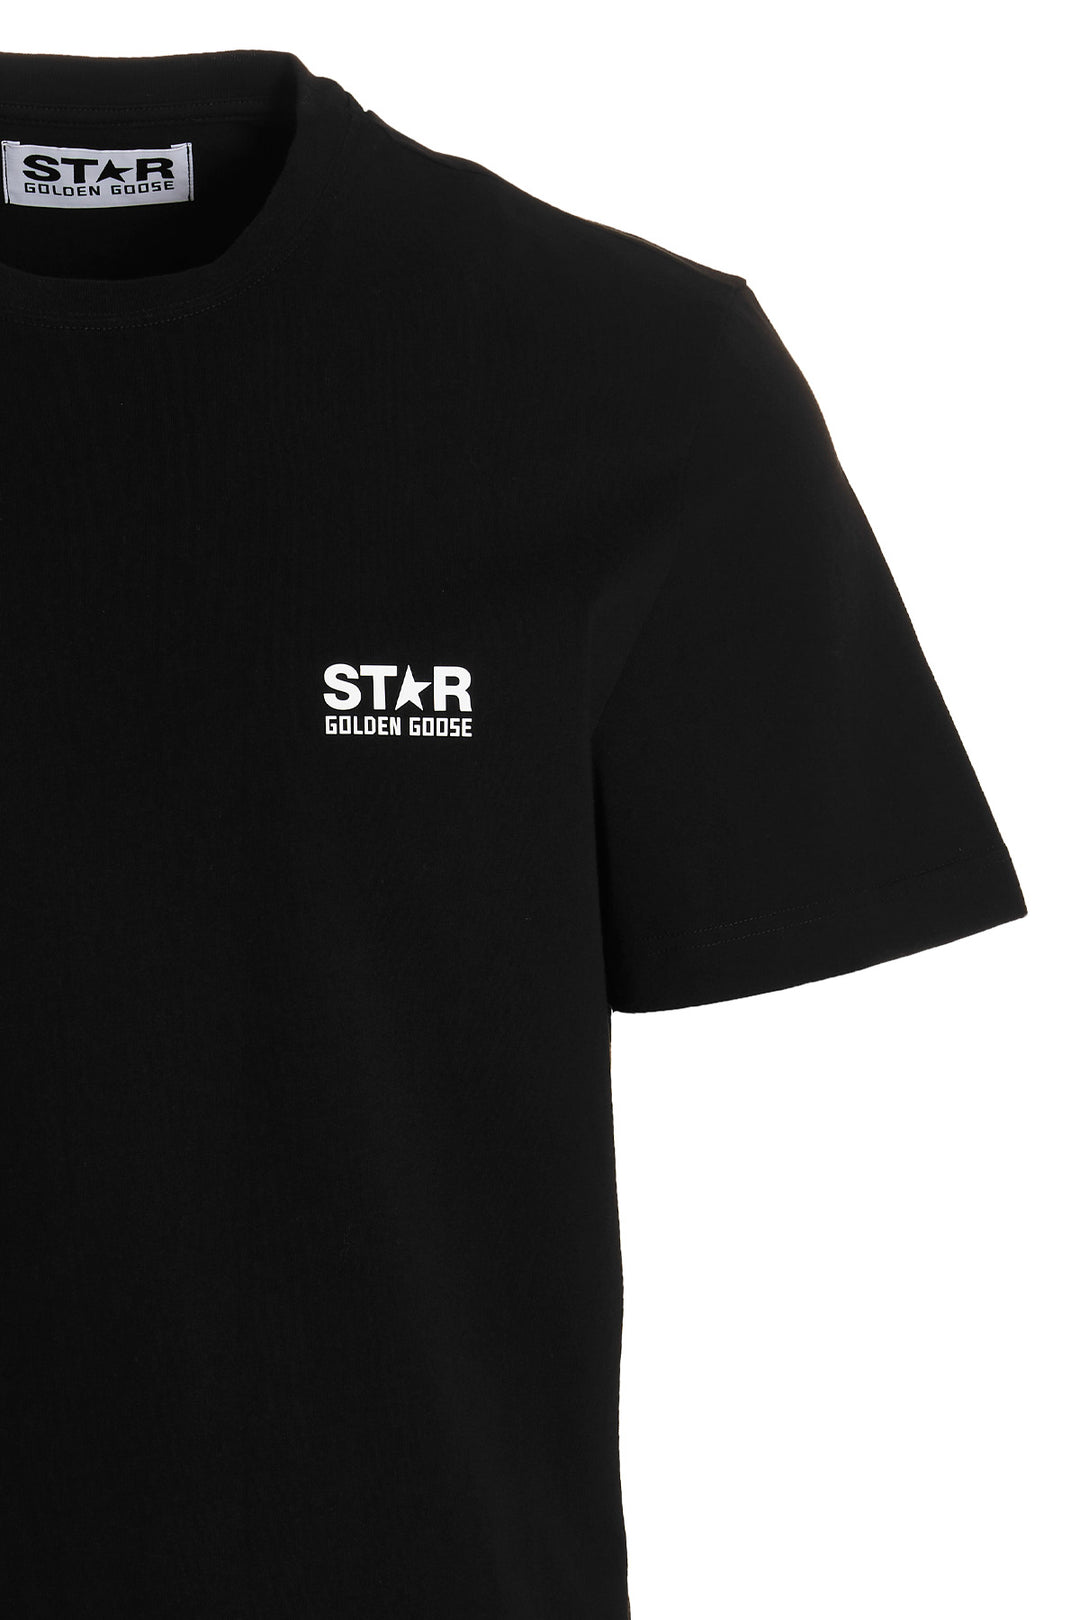 Star T Shirt Nero